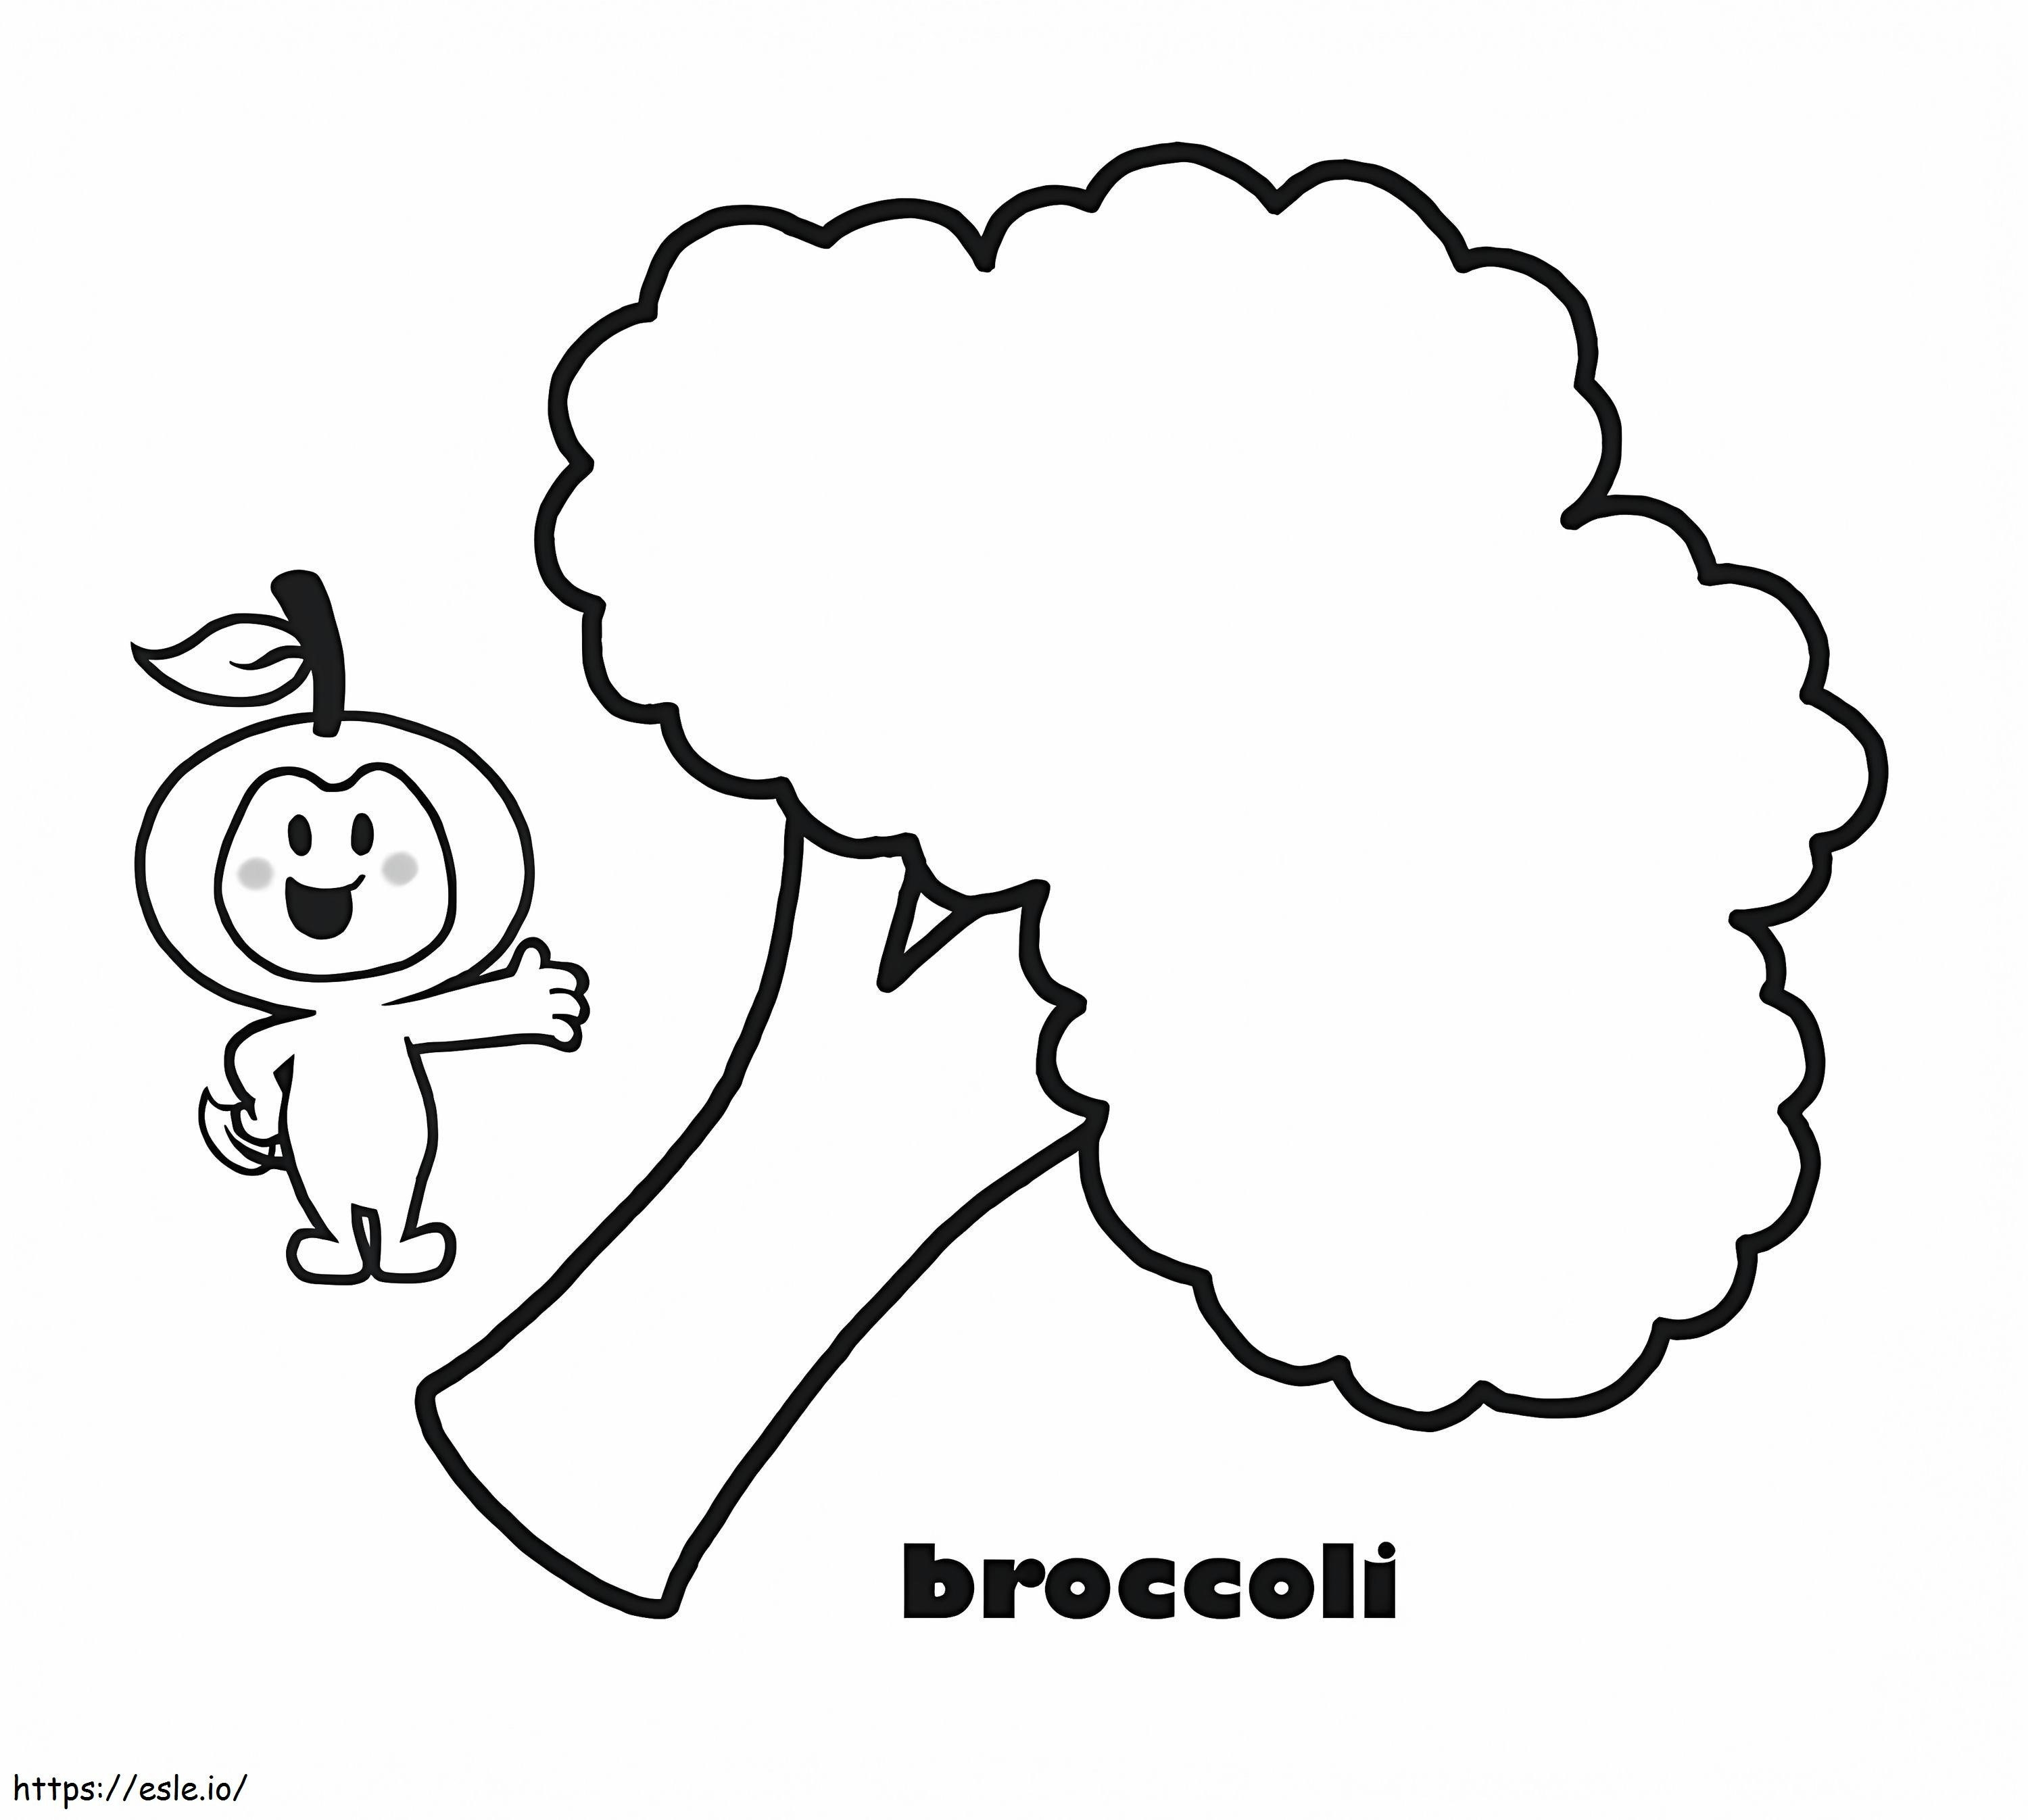 Broccoli semplici da colorare